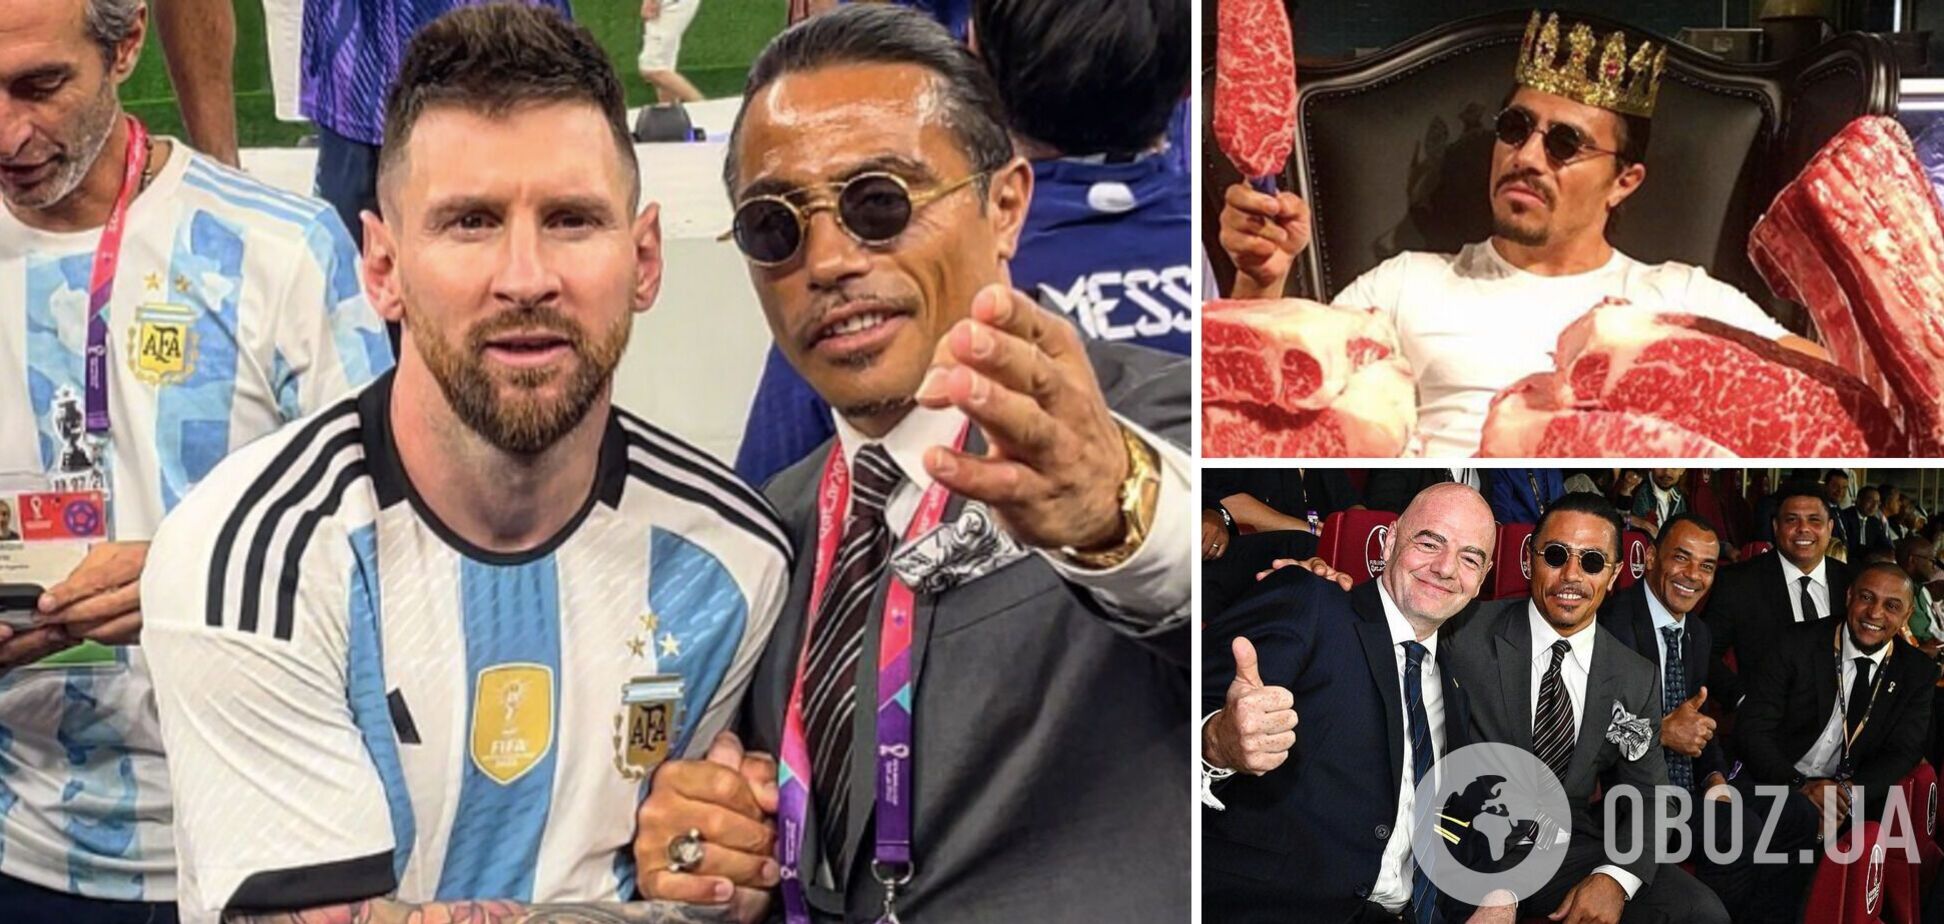 Пустили мясника к Месси и кубку мира: президента ФИФА обвинили в кумовстве и блате для своих друзей